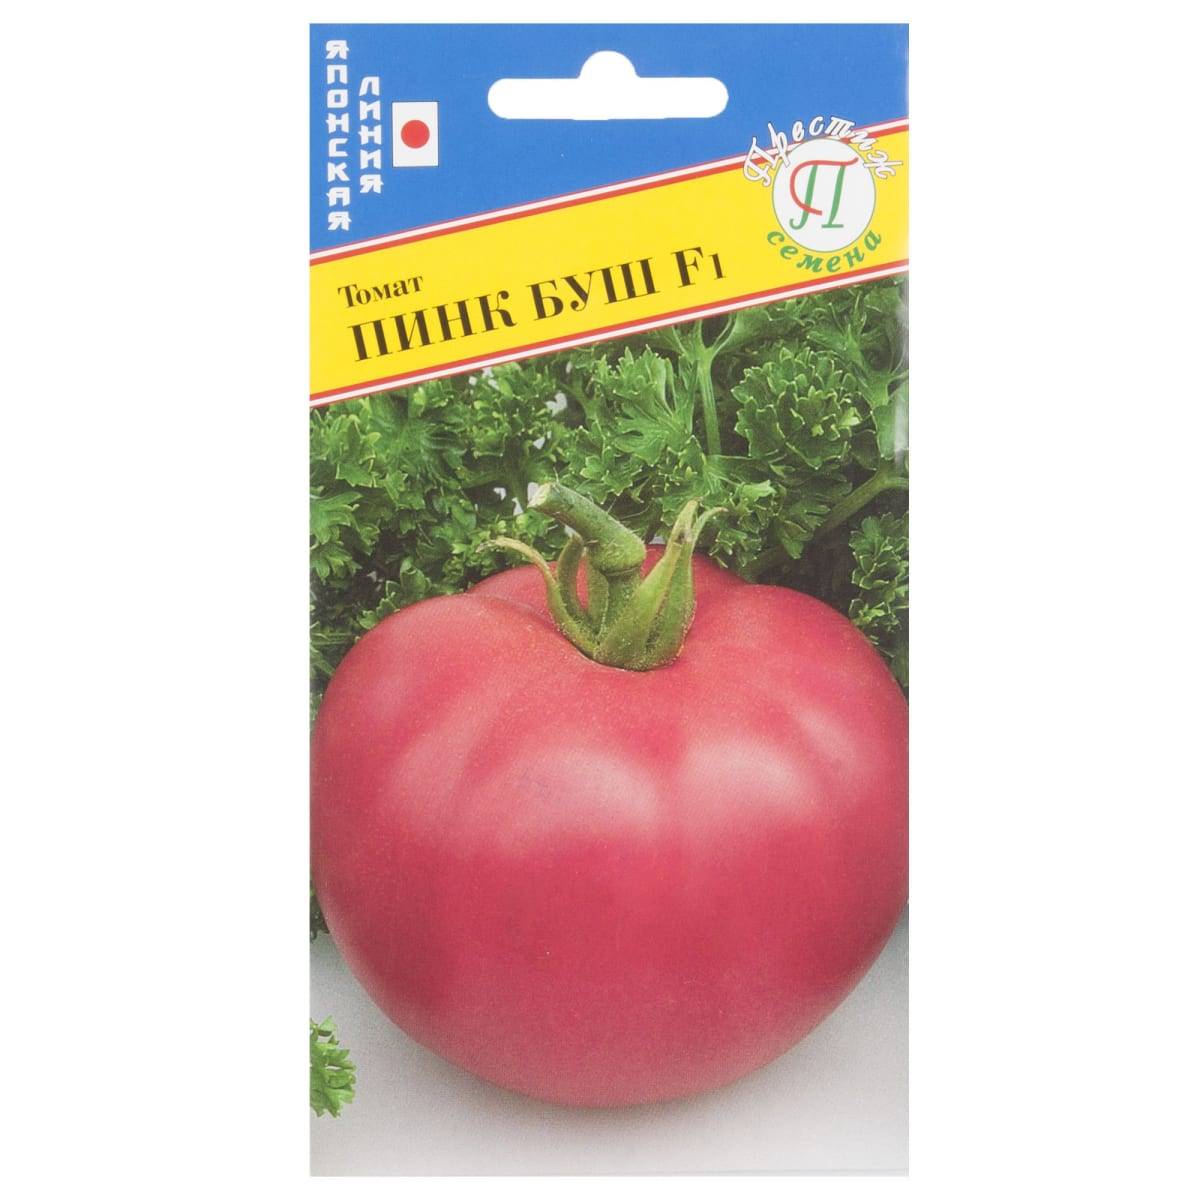 Пинк буш: описание сорта томата, характеристики помидоров, посев